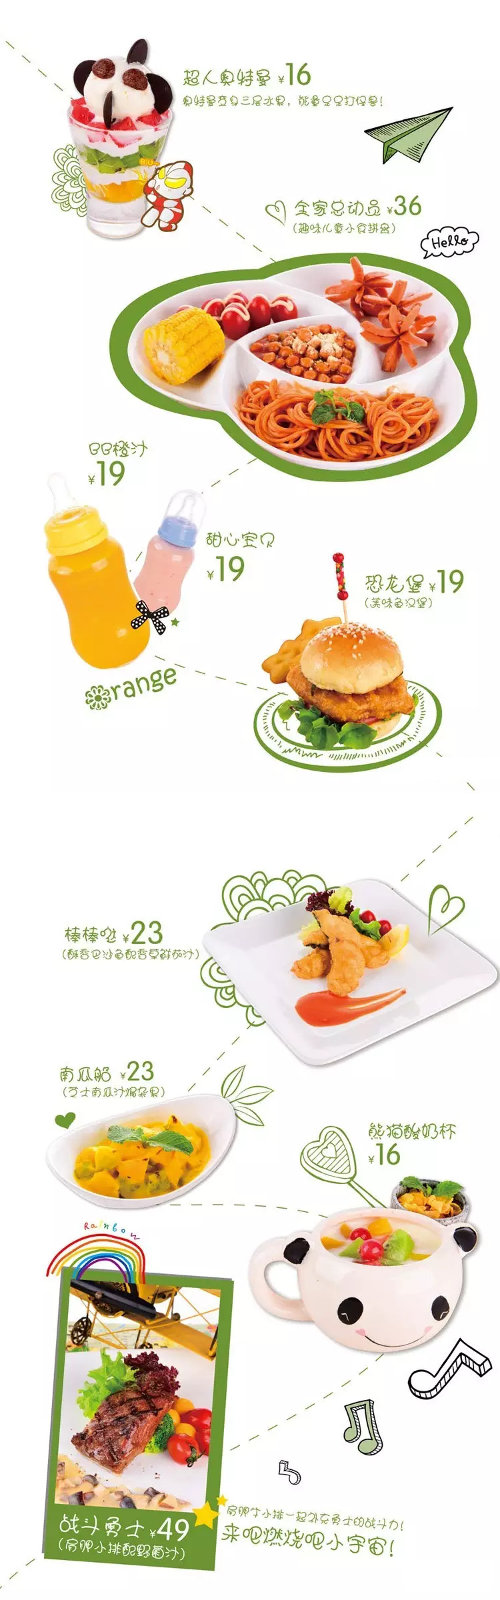 绿茵阁优惠促销，广州绿茵阁专属孩子的暑期美食优惠价16元起